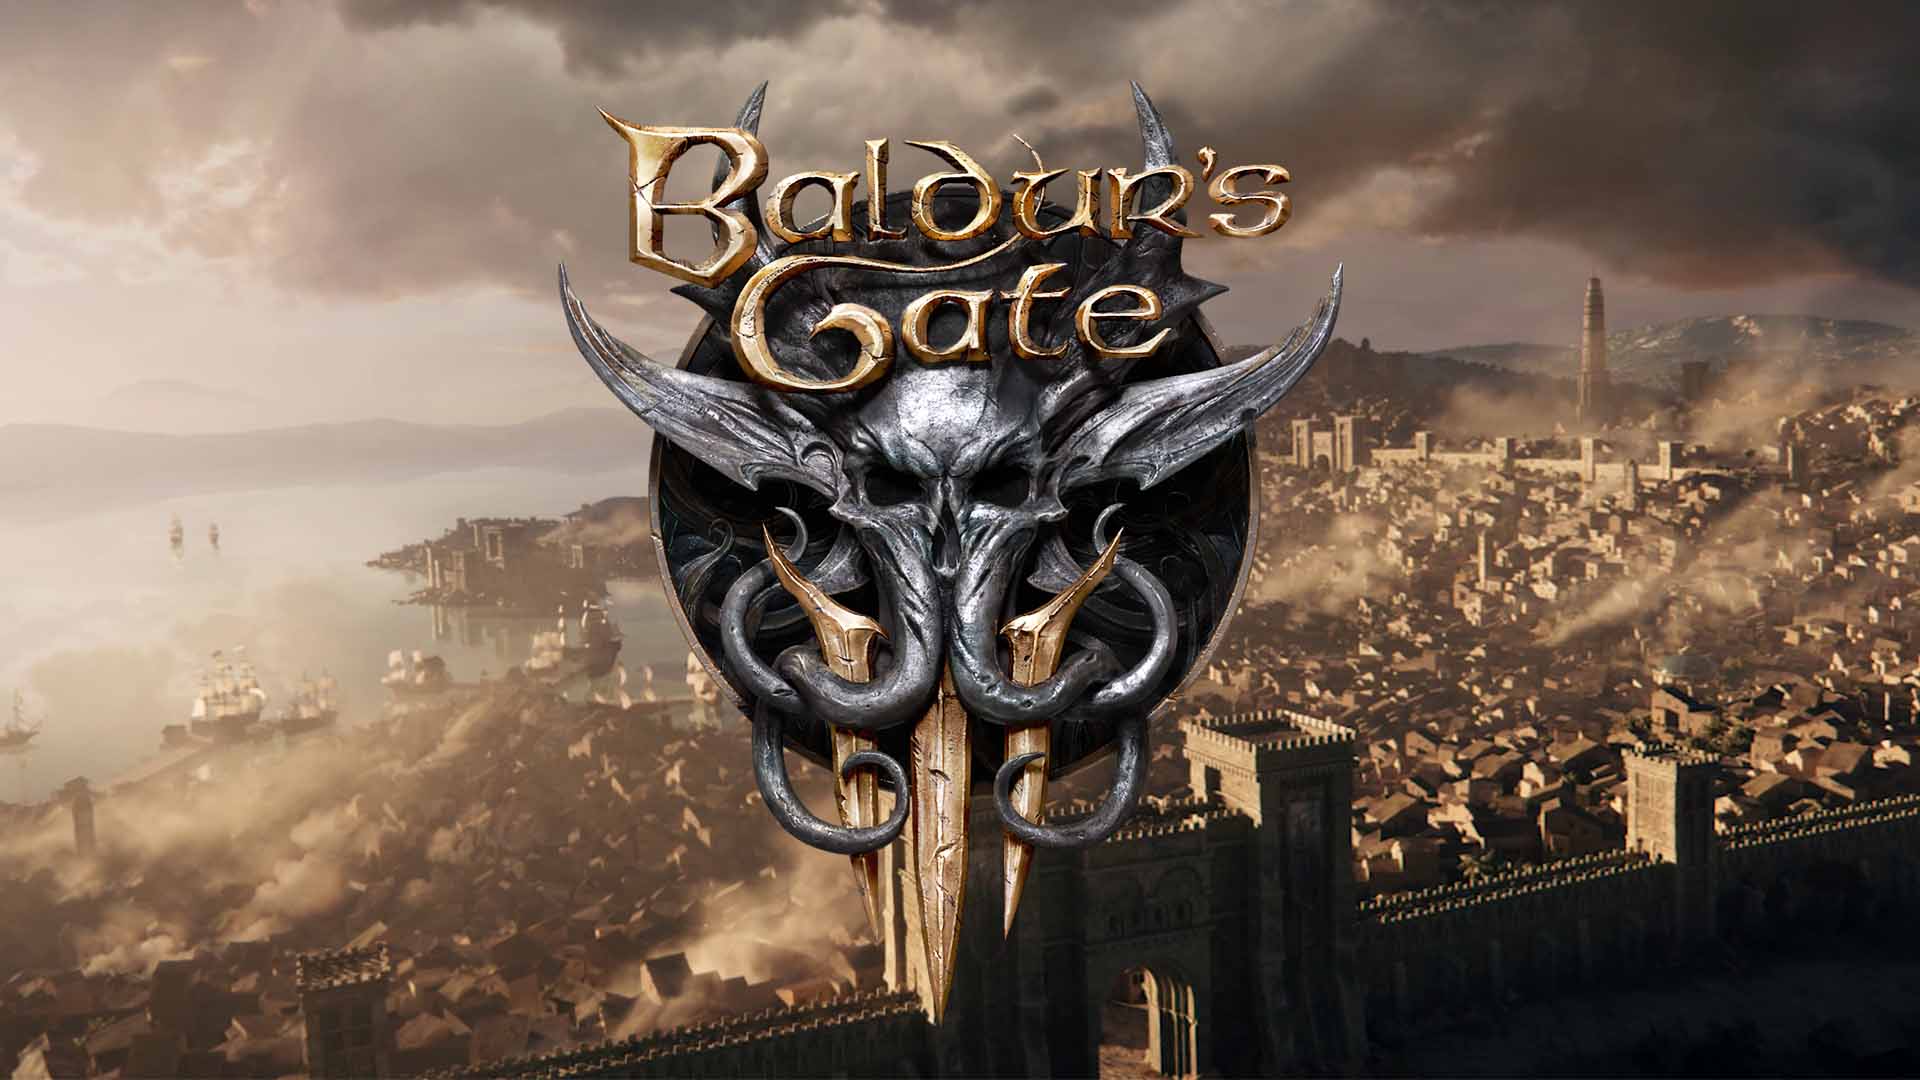 Baldurs-Gate-3-Main-image-HD-1080p.jpg